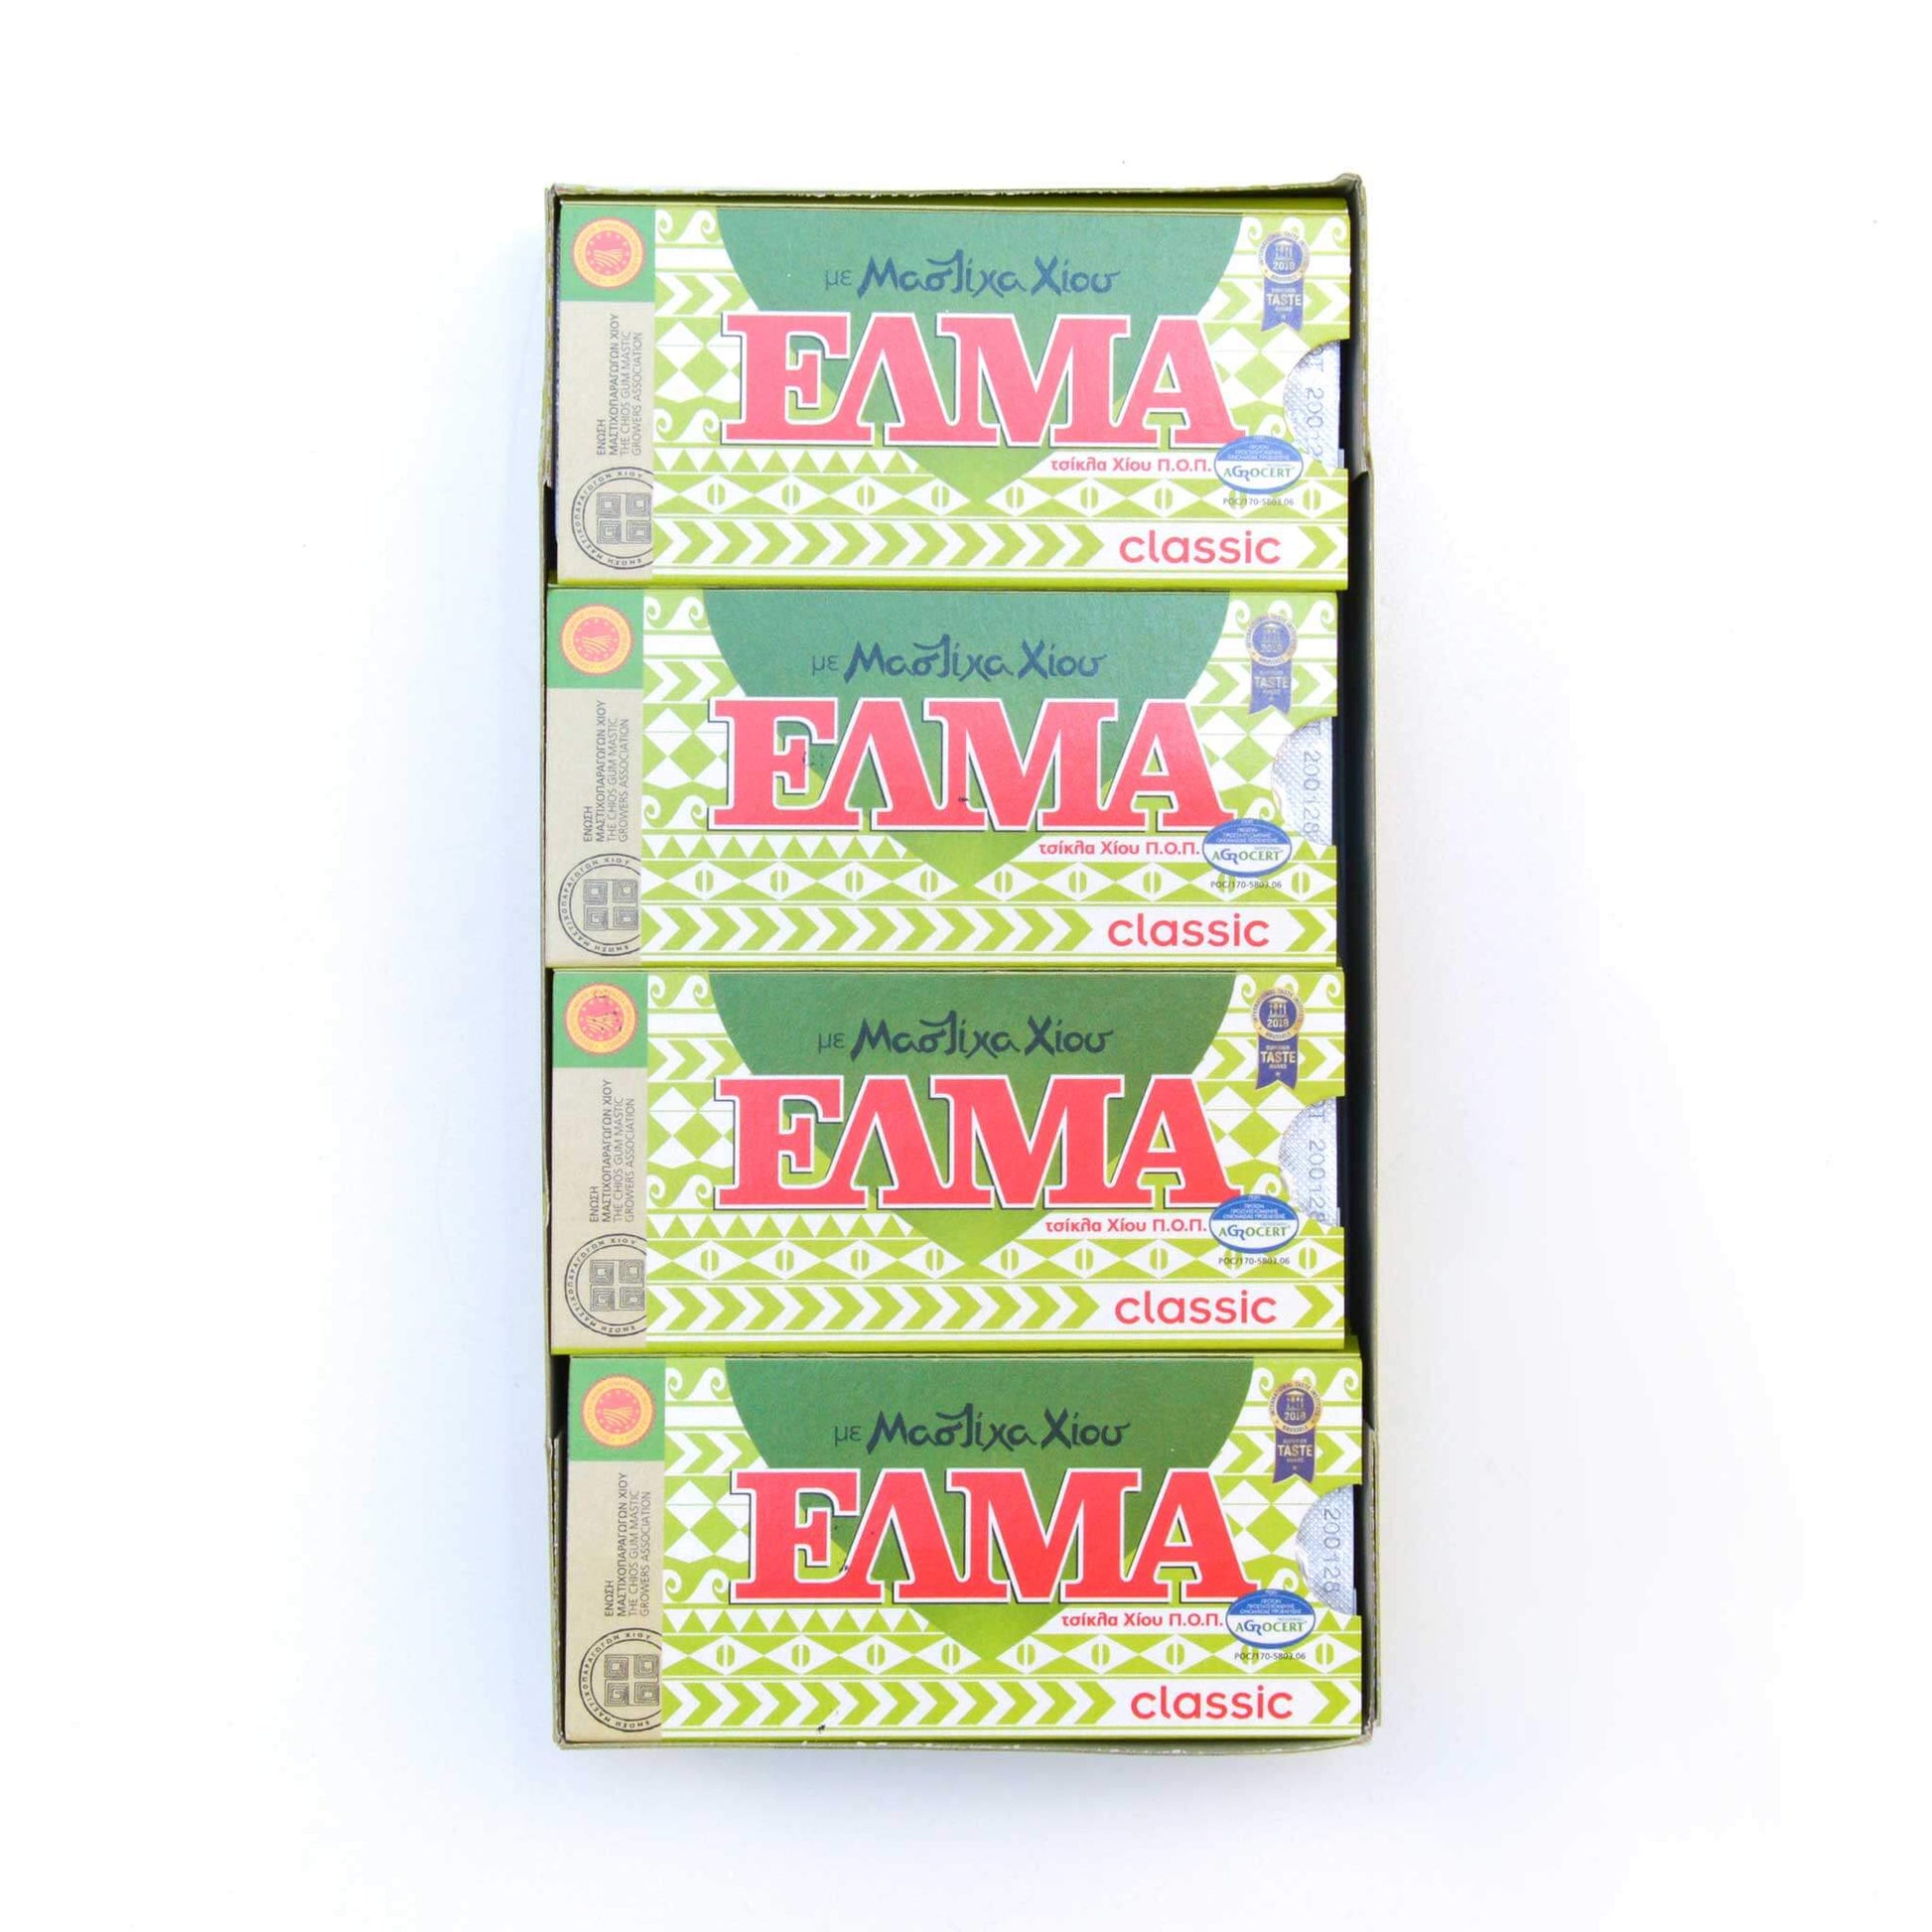 ELMA Classic - Guma z mastyksem i cukrem